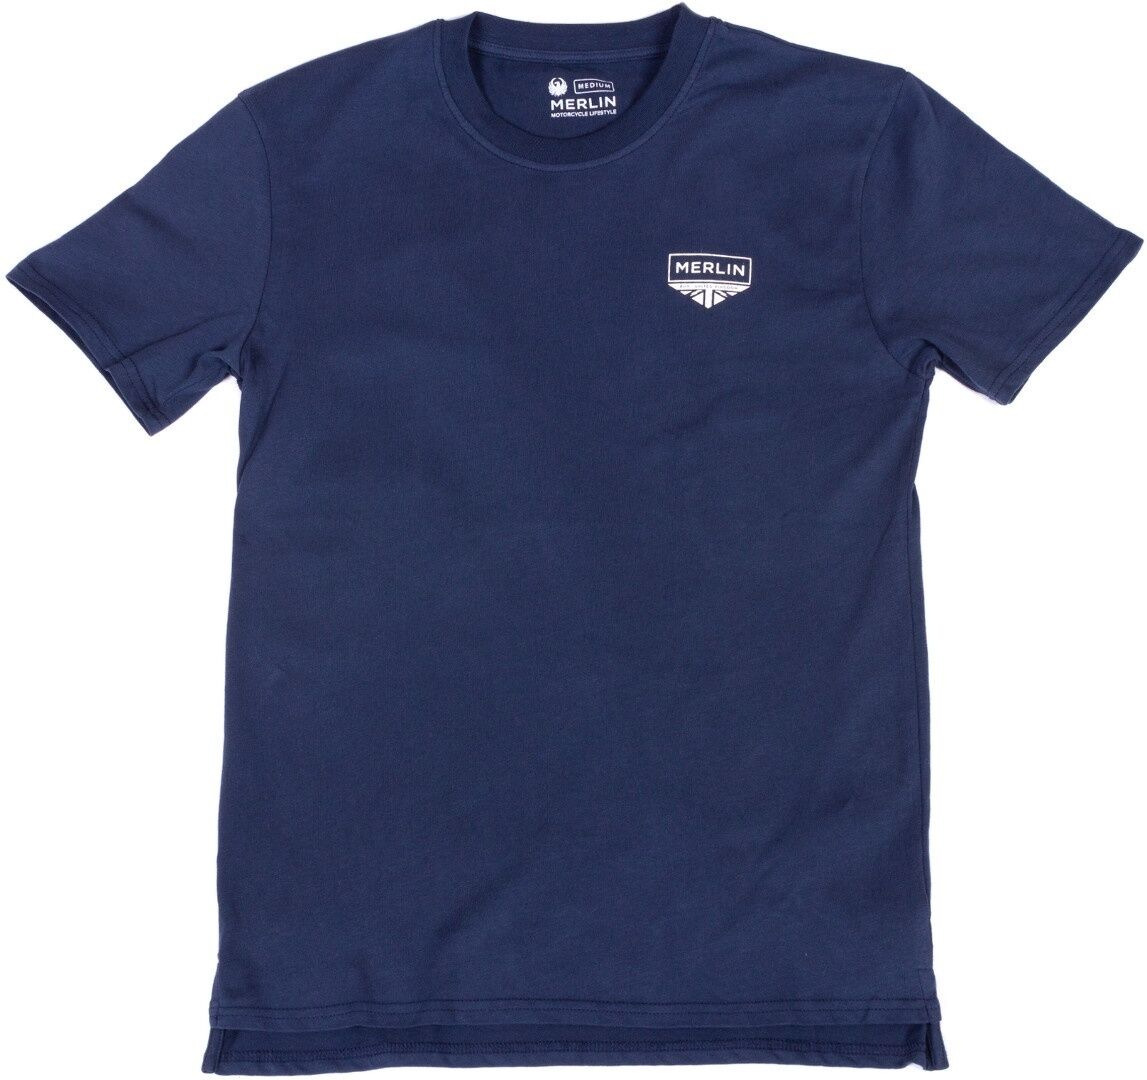 Merlin Truro Signature Camiseta - Azul (XL)